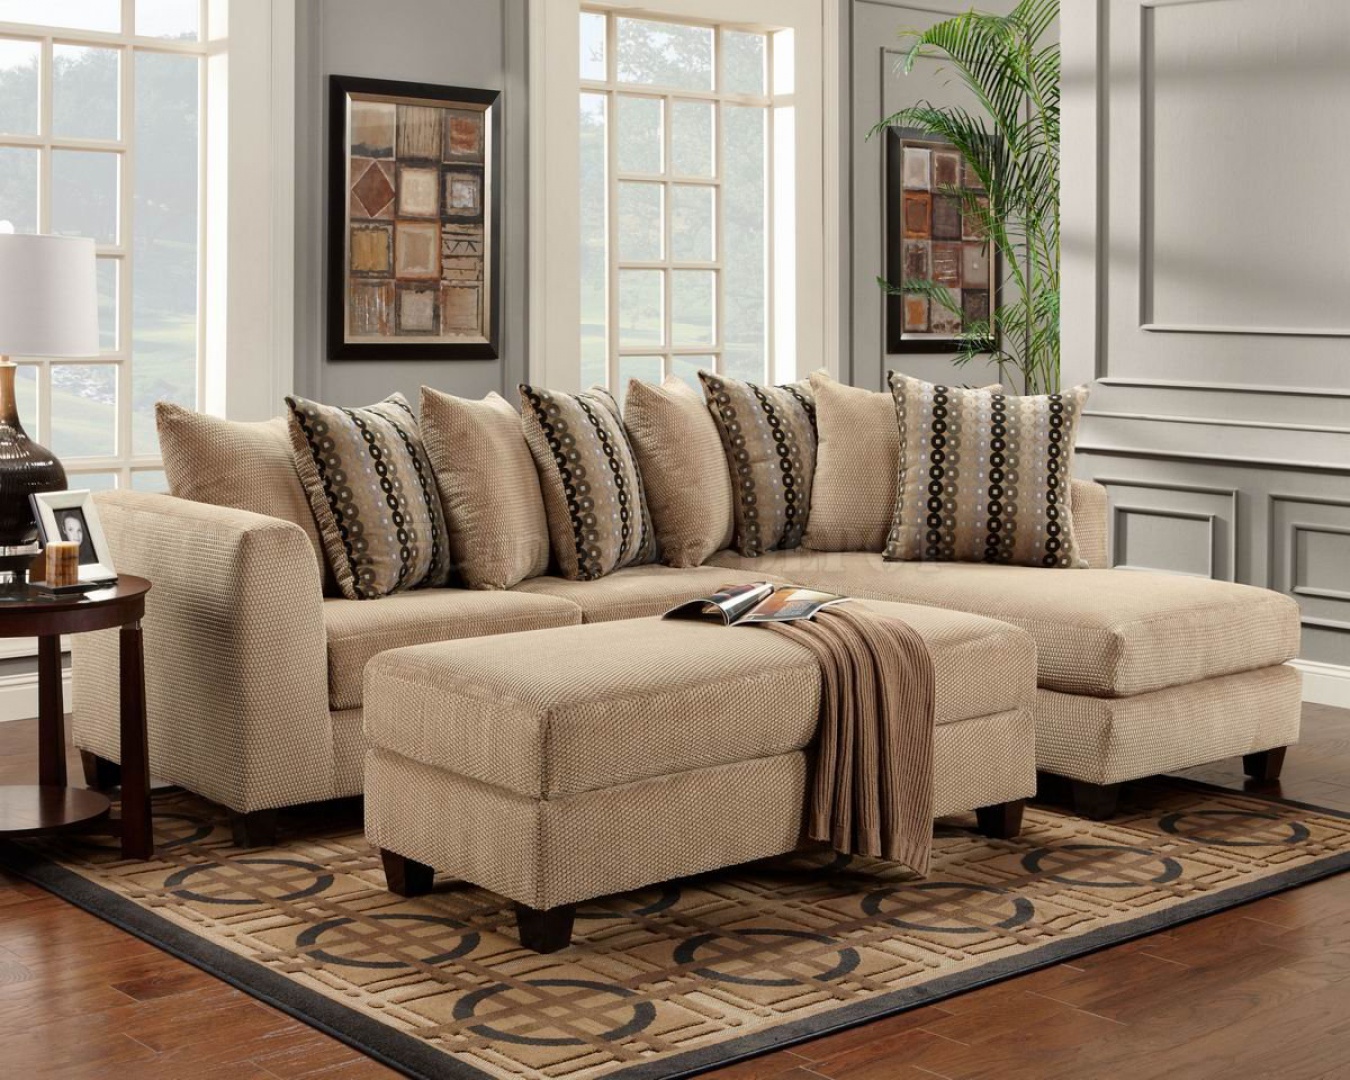 patterned living room furniture